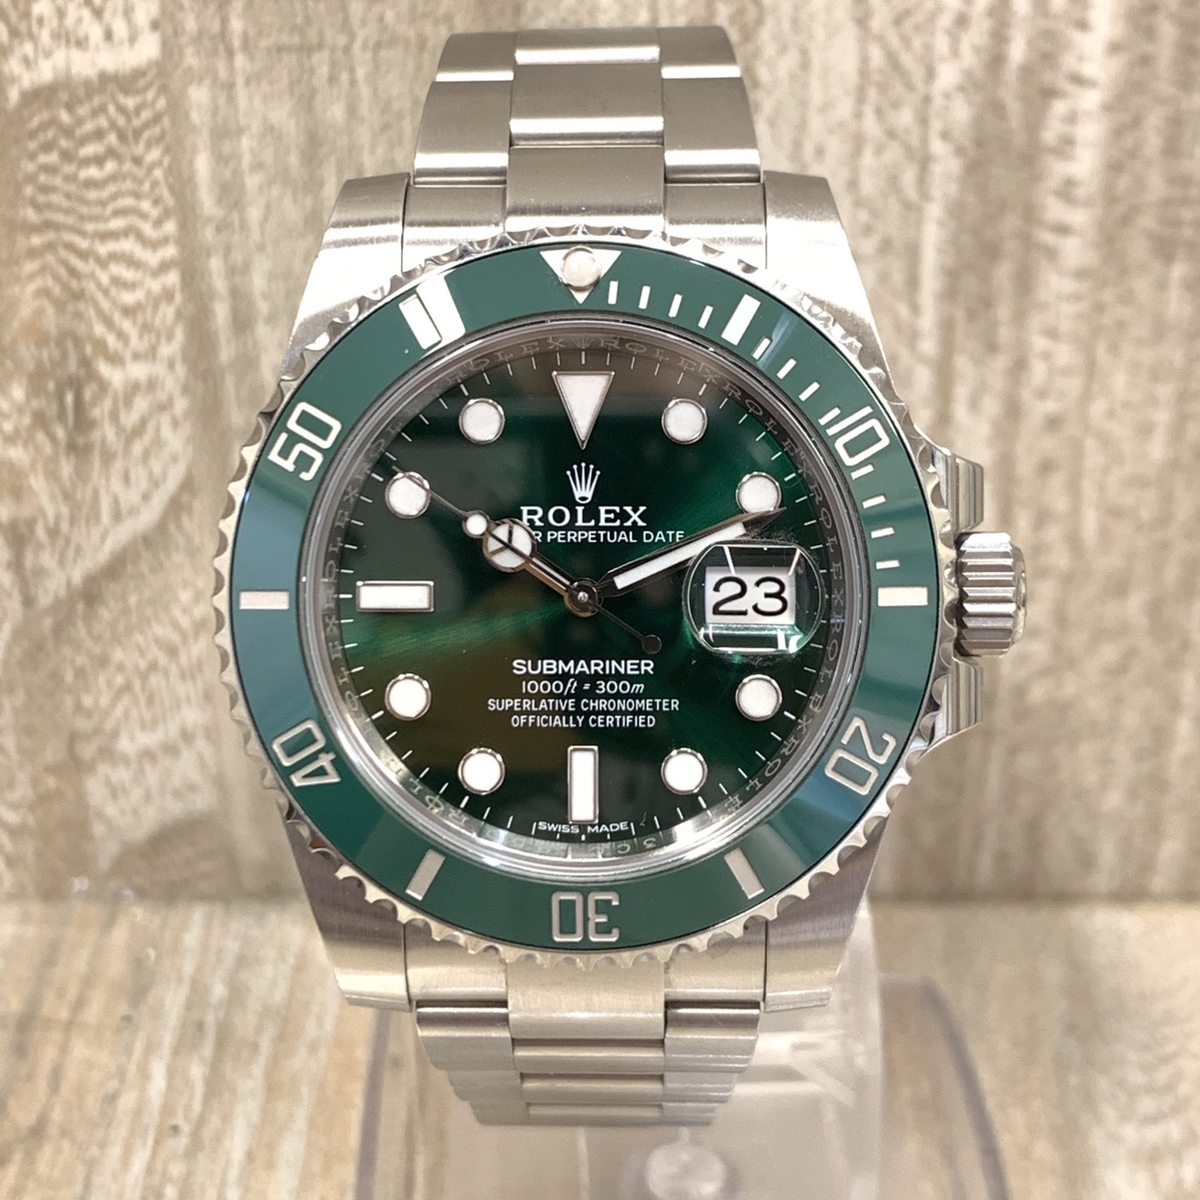 ロレックスの116610LV グリーン サブマリーナーデイト 自動巻き 腕時計の買取実績です。